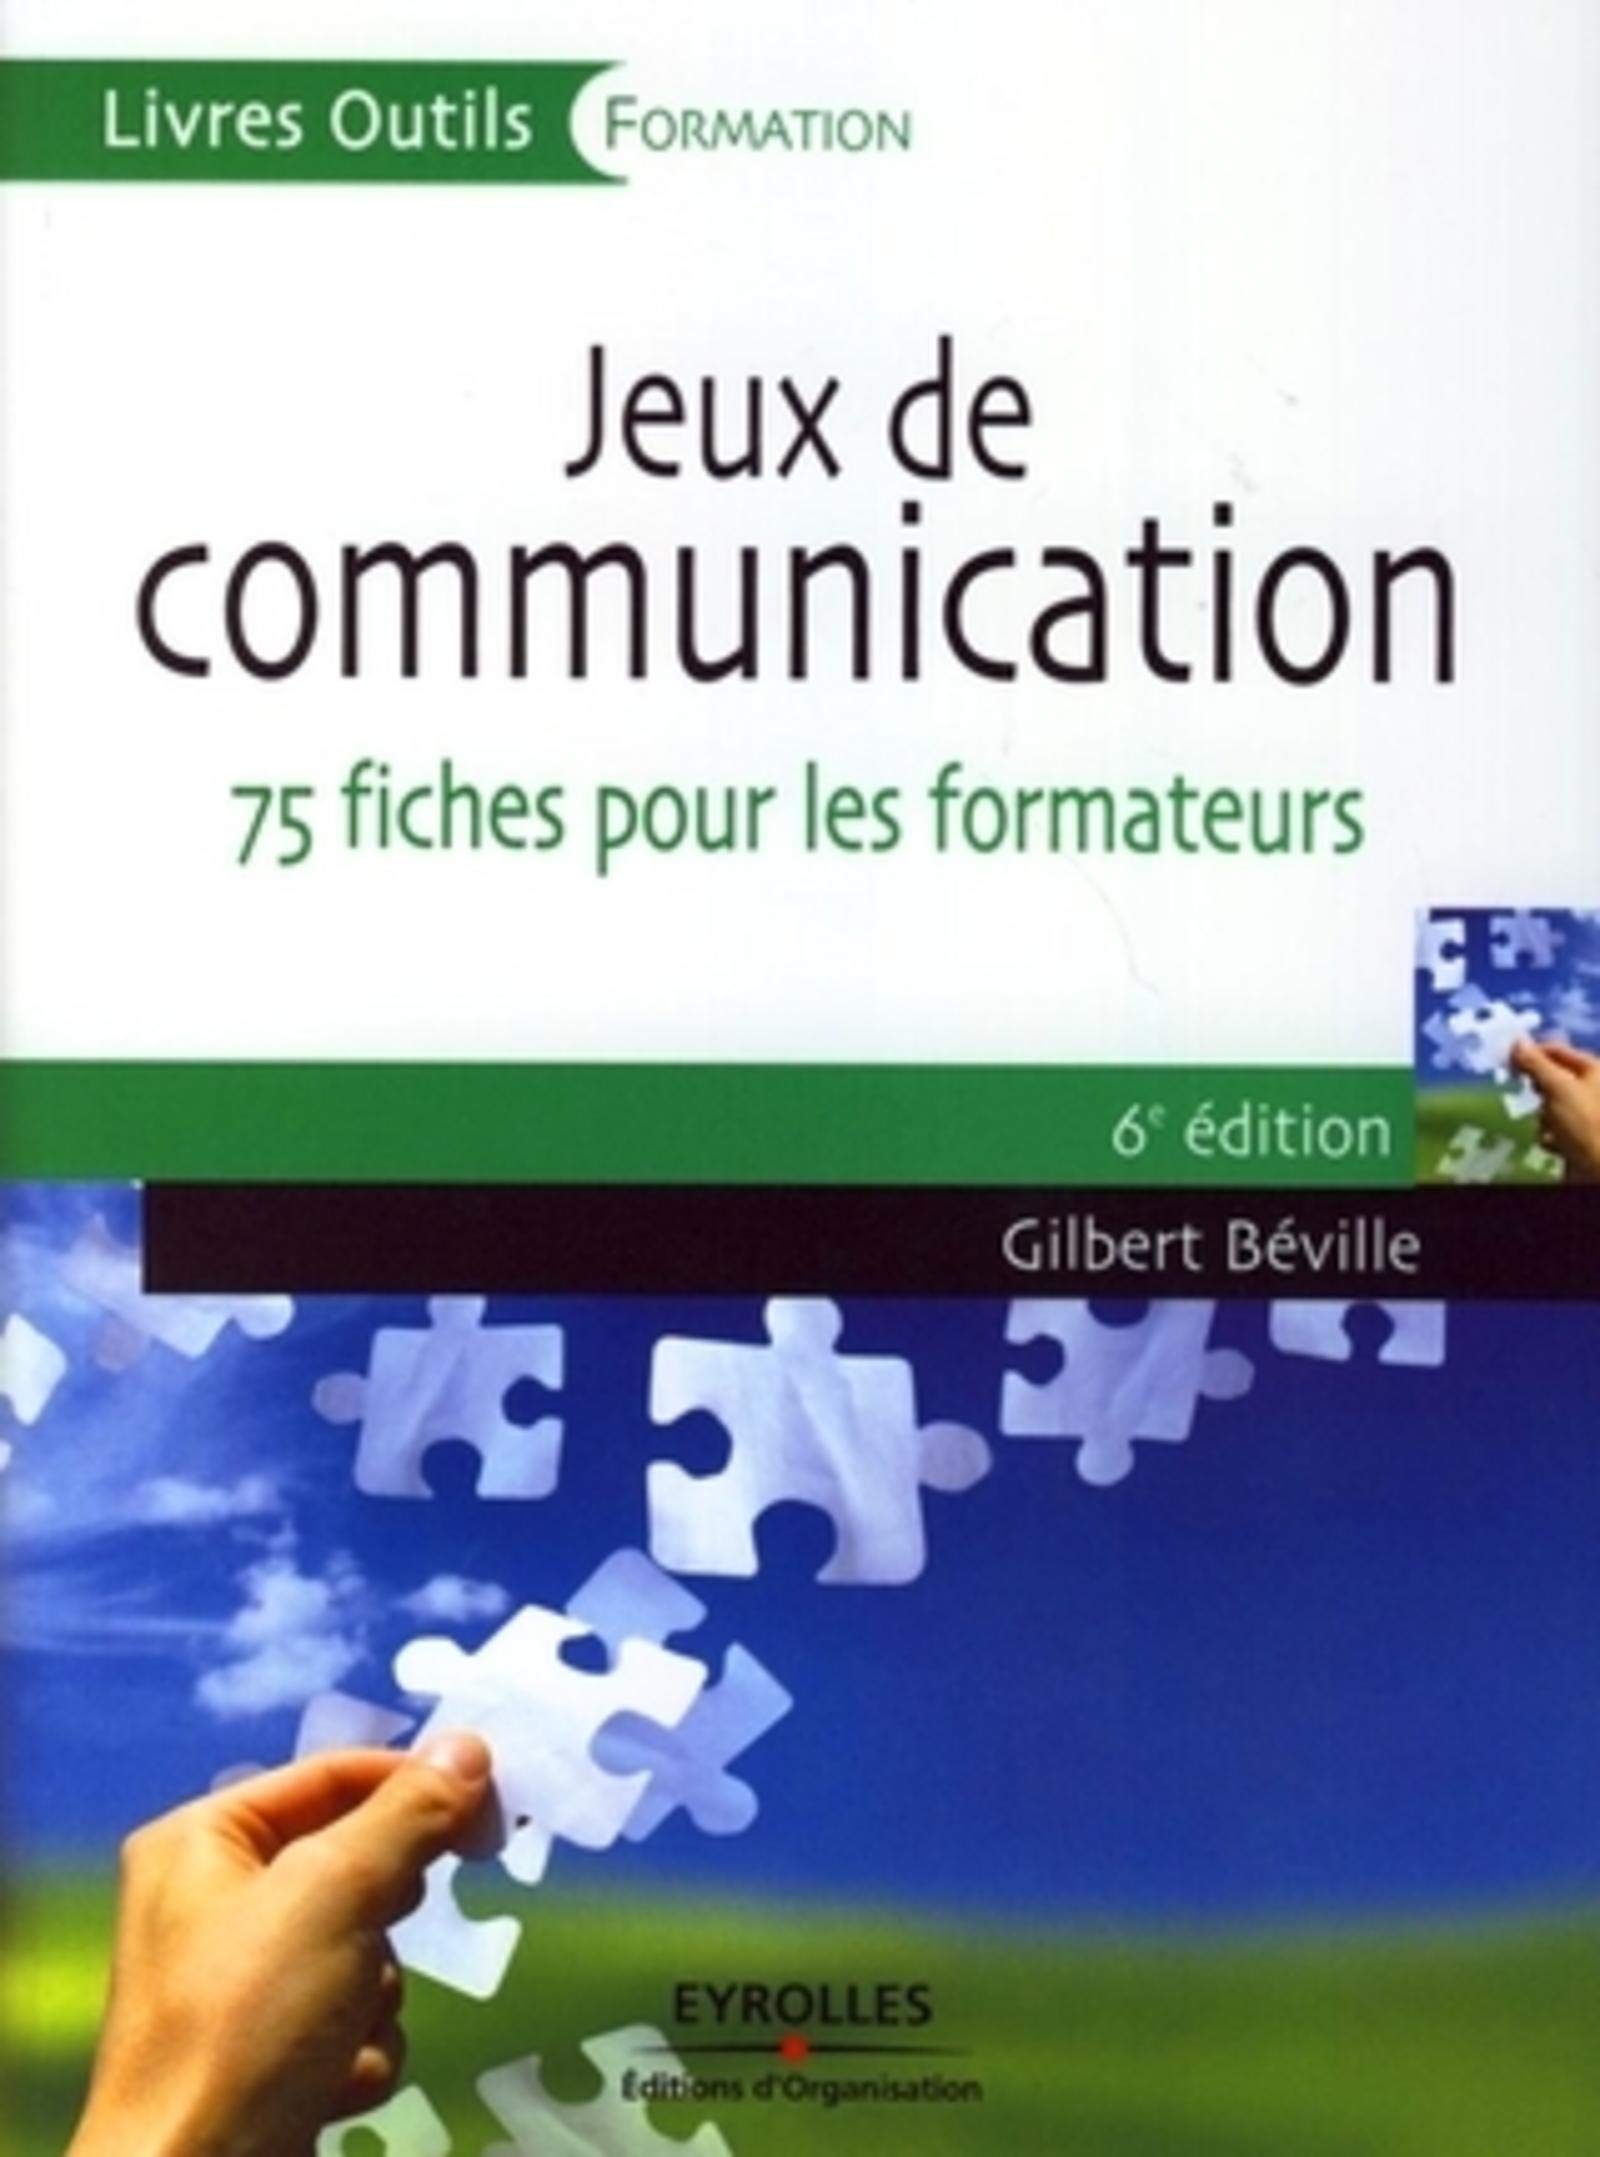 Livre Gilbert Béville Jeux de communication 75 fiches pour les formateurs